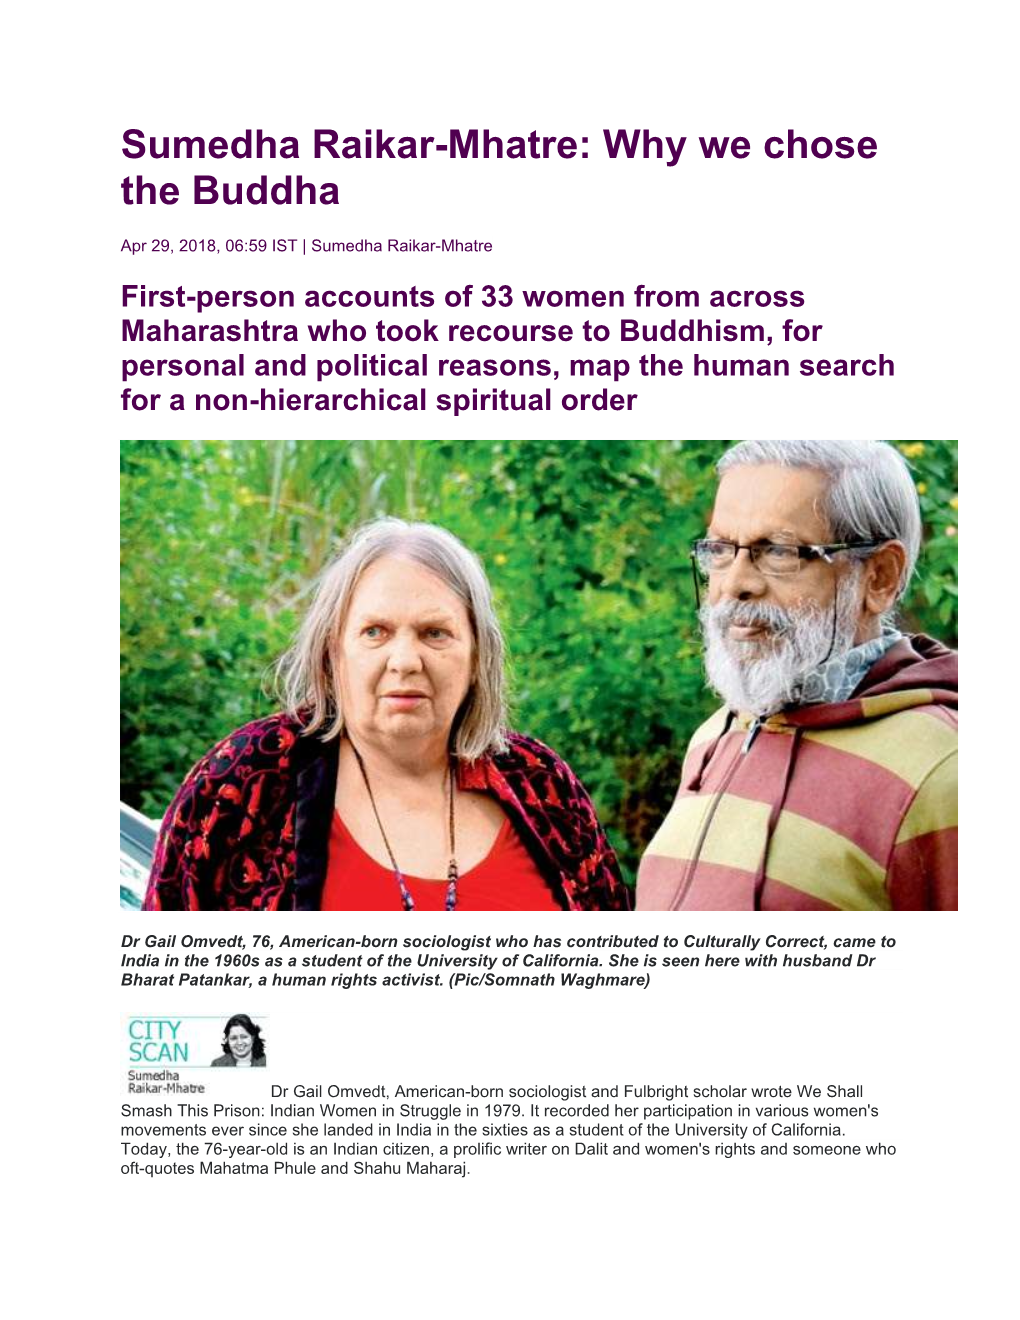 Sumedha Raikar-Mhatre: Why We Chose the Buddha